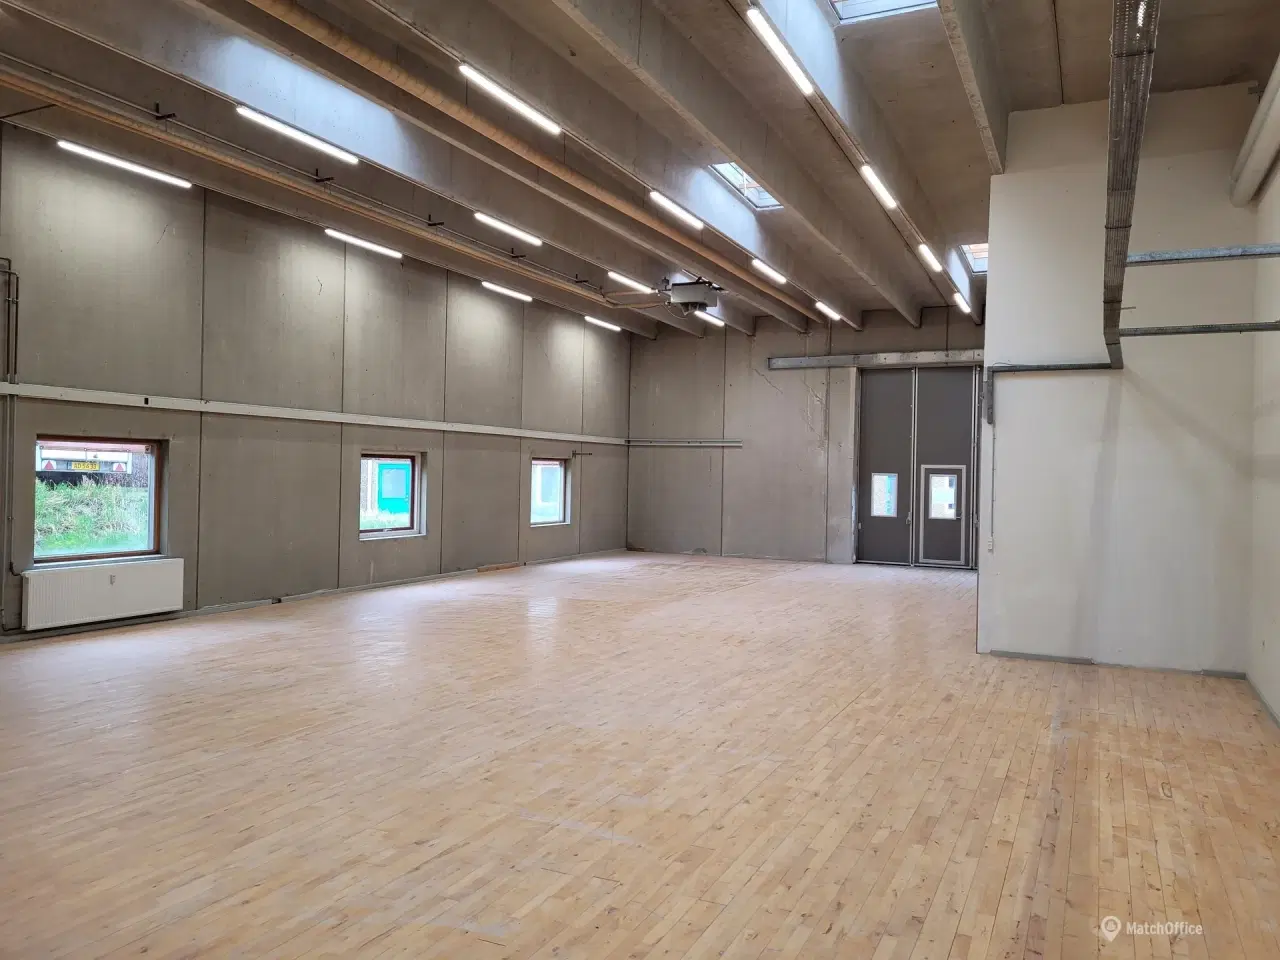 Billede 1 - 230 m2 opvarmet lager og produktionslokale i Næstved